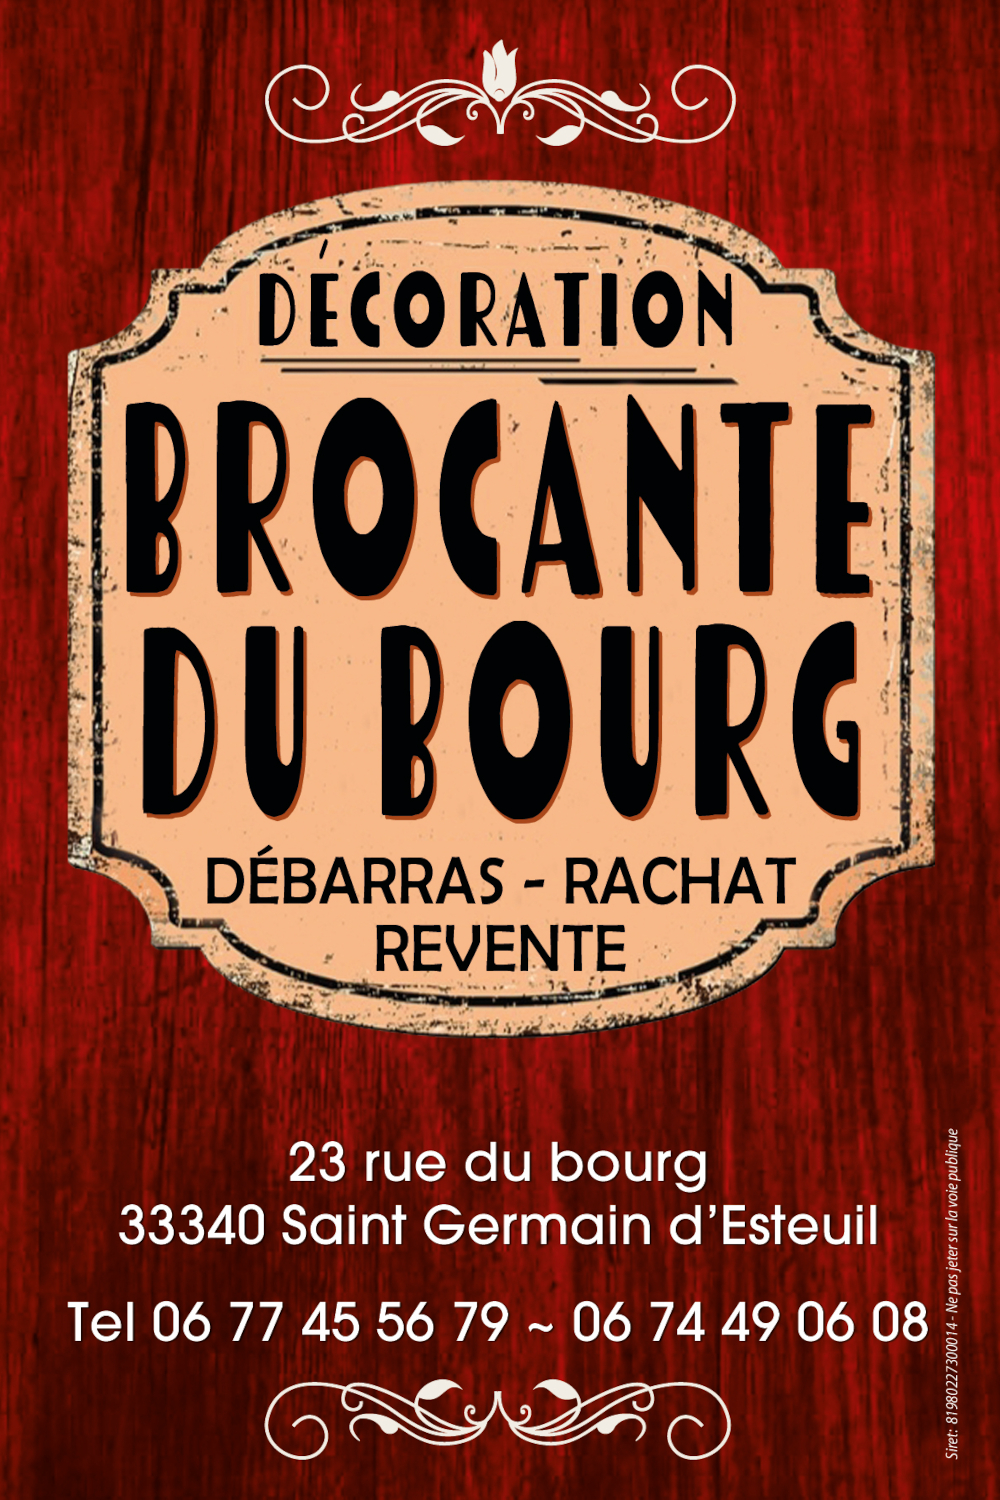 Décoration Brocante du Bourg